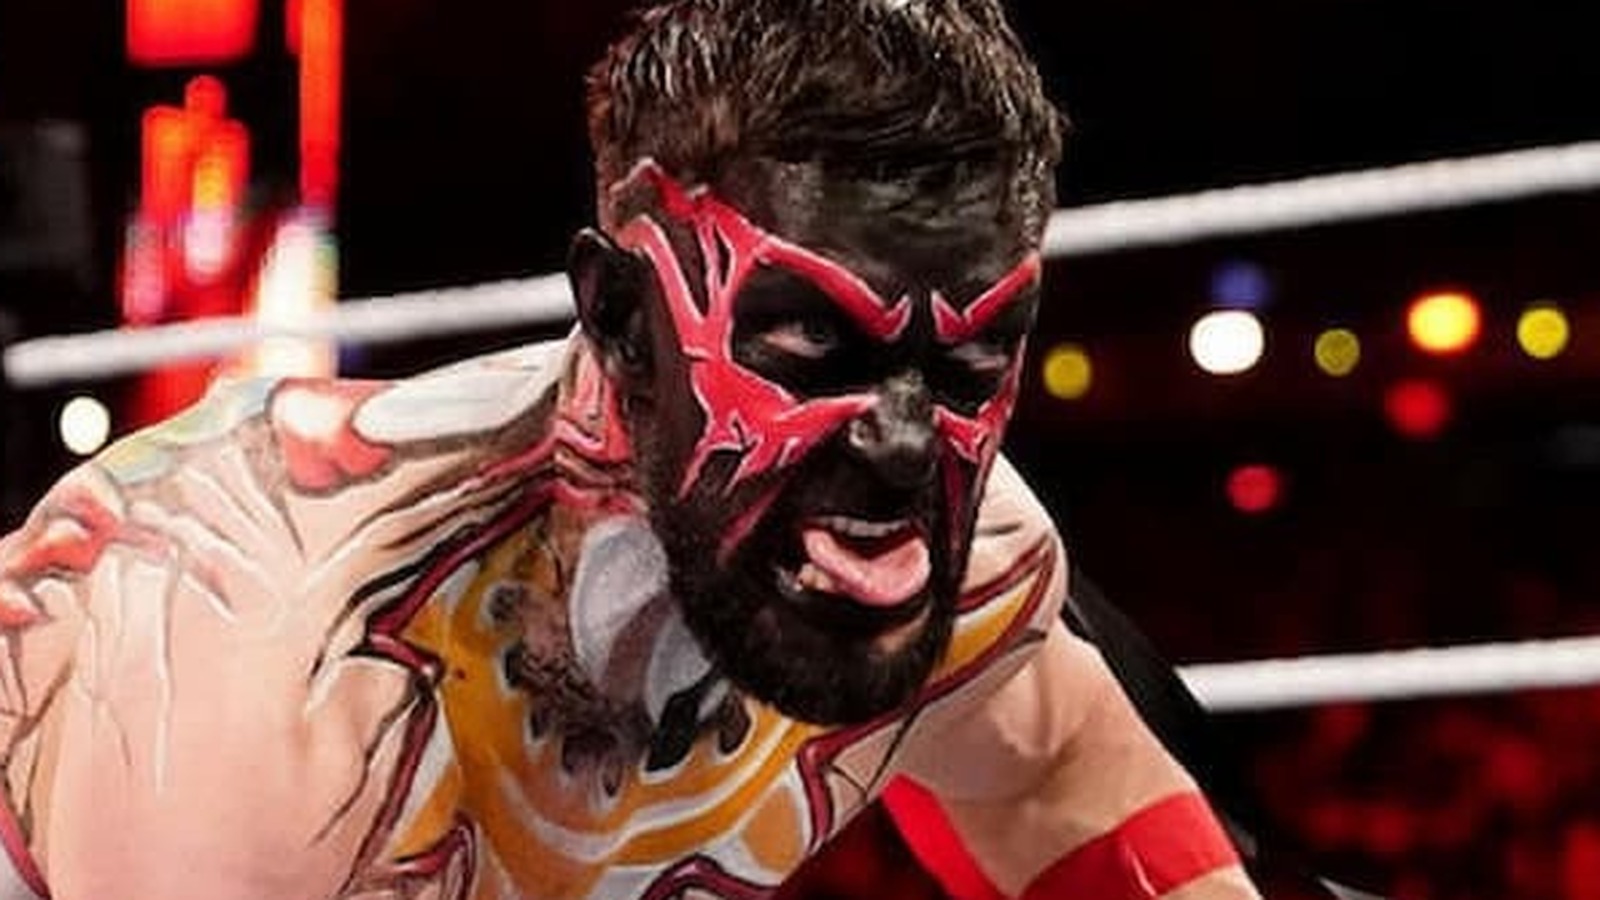 Actualización entre bastidores sobre los planes de WWE para la Persona 'Demon' de Finn Balor